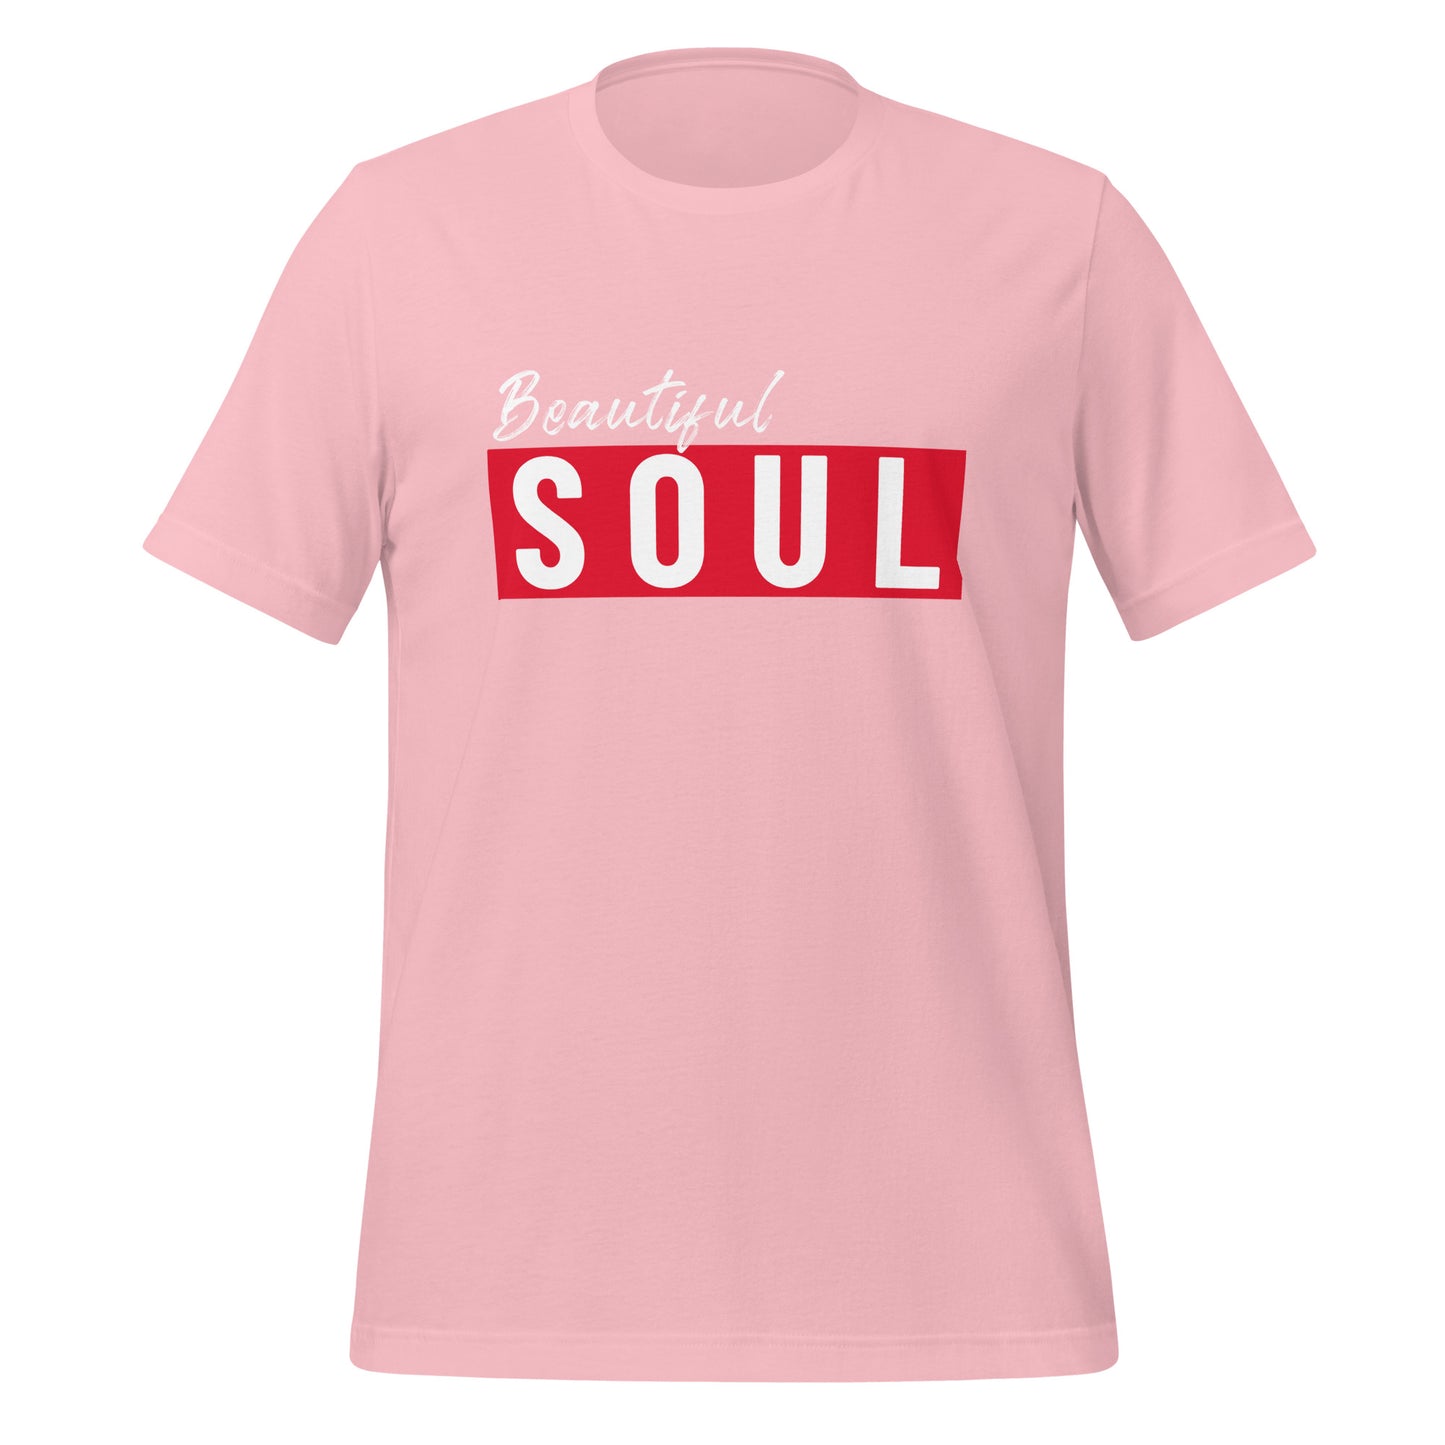 Beautiful Soul Adult T-shirt